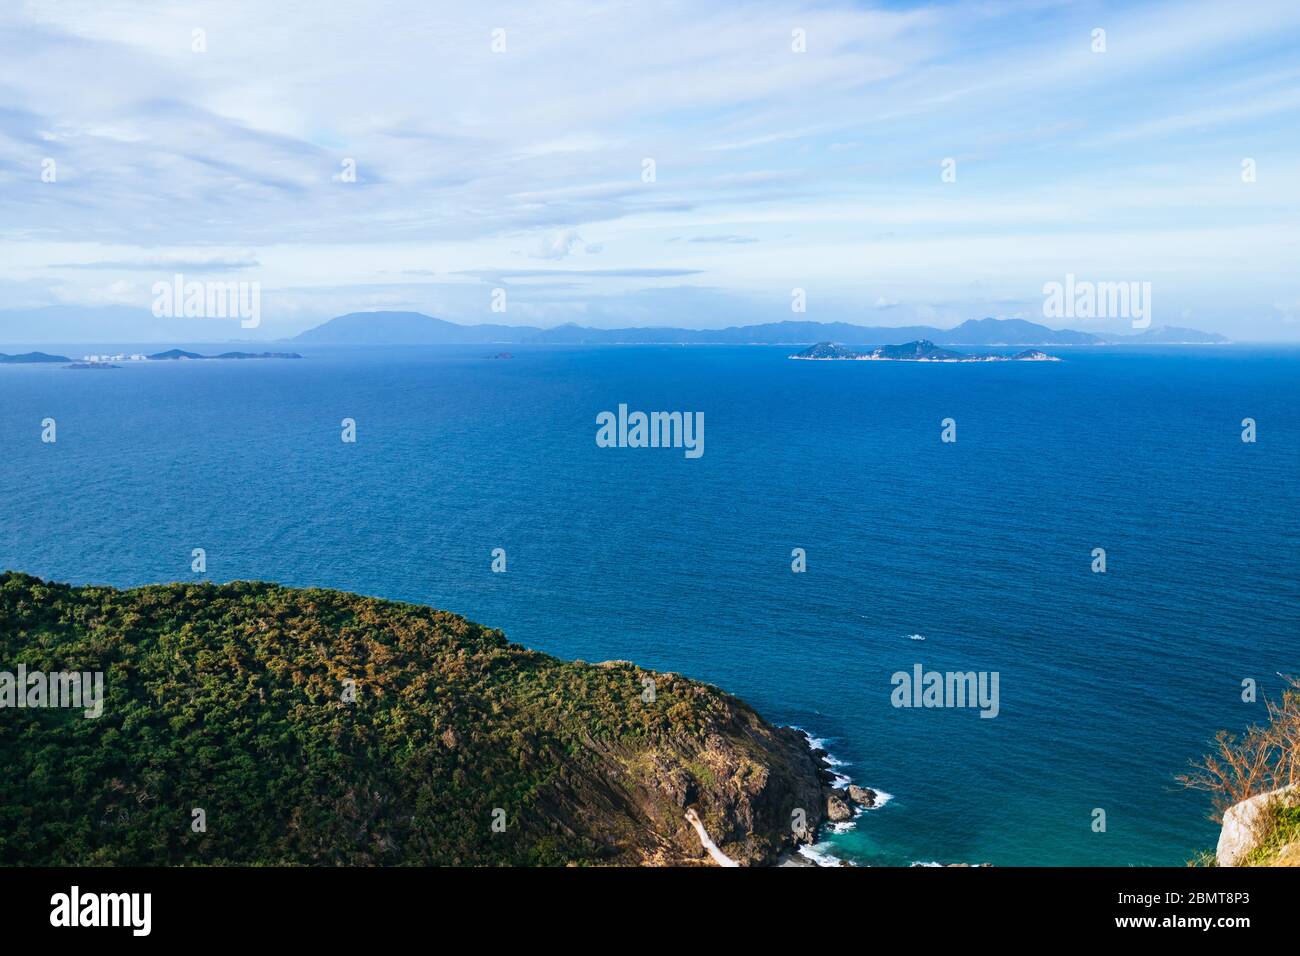 Panoramaaussicht auf die Meereslandschaft vom Gipfel des Berges. Das blaue Meer, die grünen Hügel im Hintergrund, die Inseln sichtbar Stockfoto